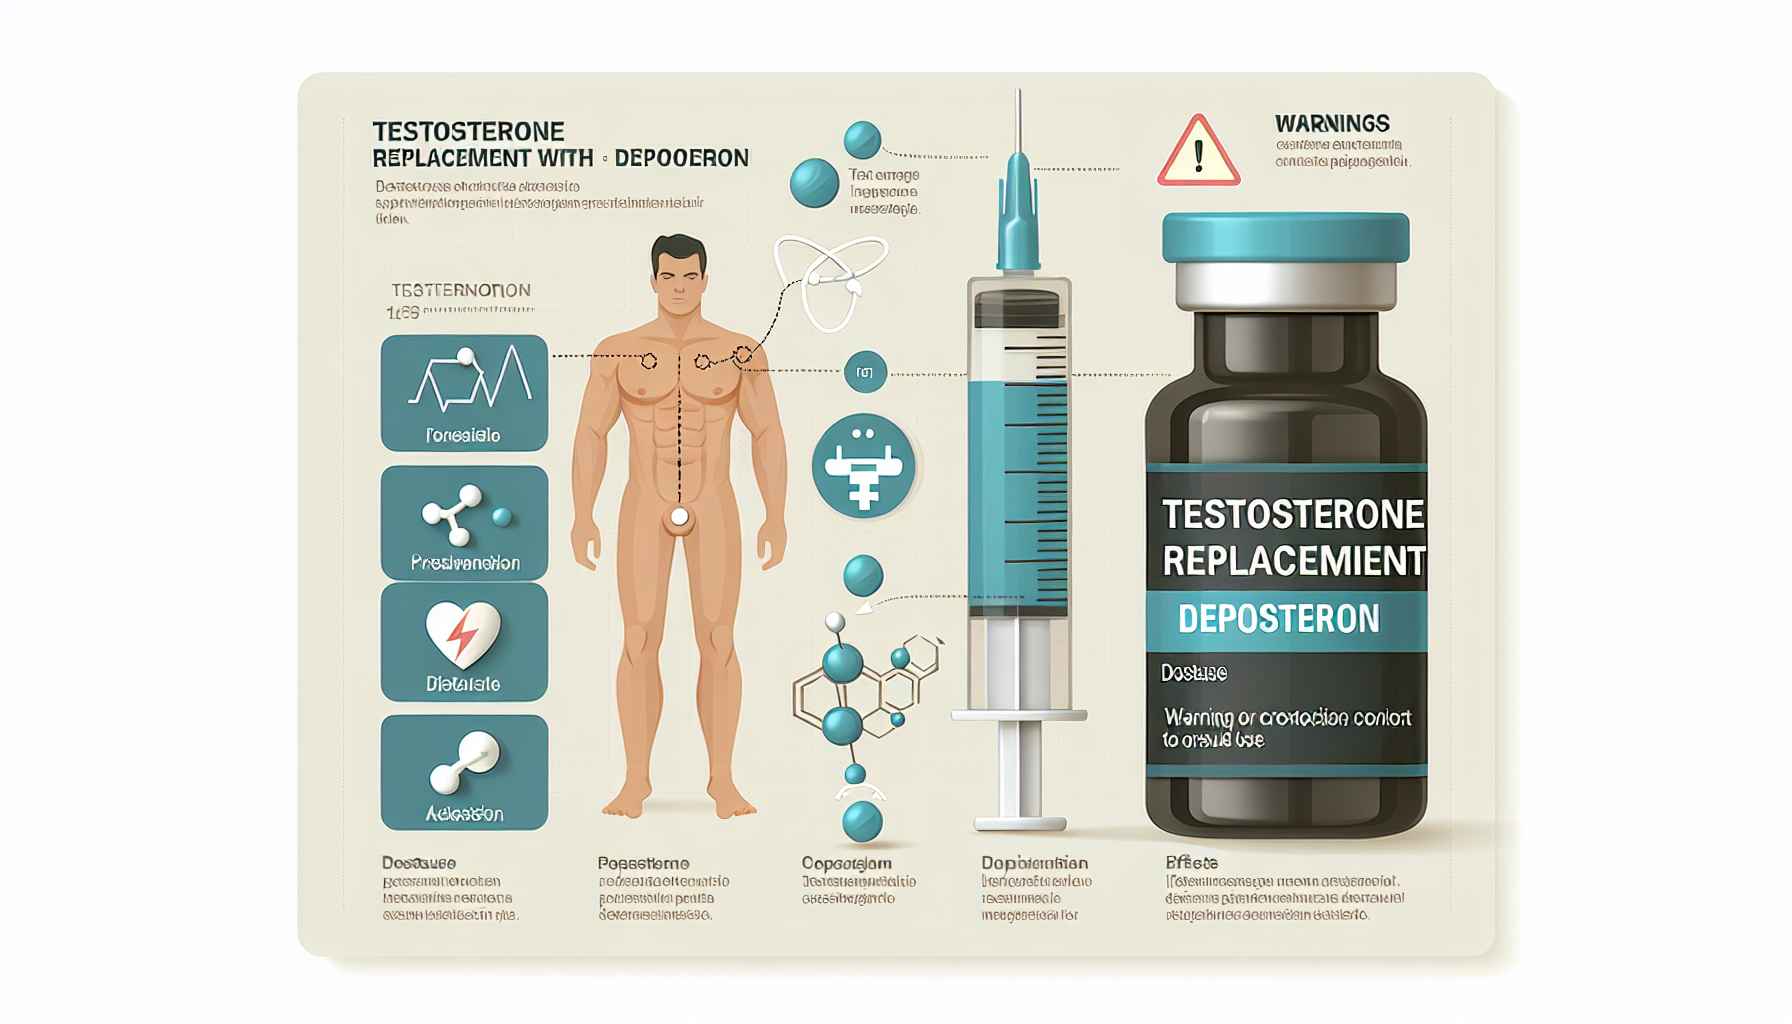 Reposição de Testosterona com Deposteron: Dosagem, Efeitos e Orientações